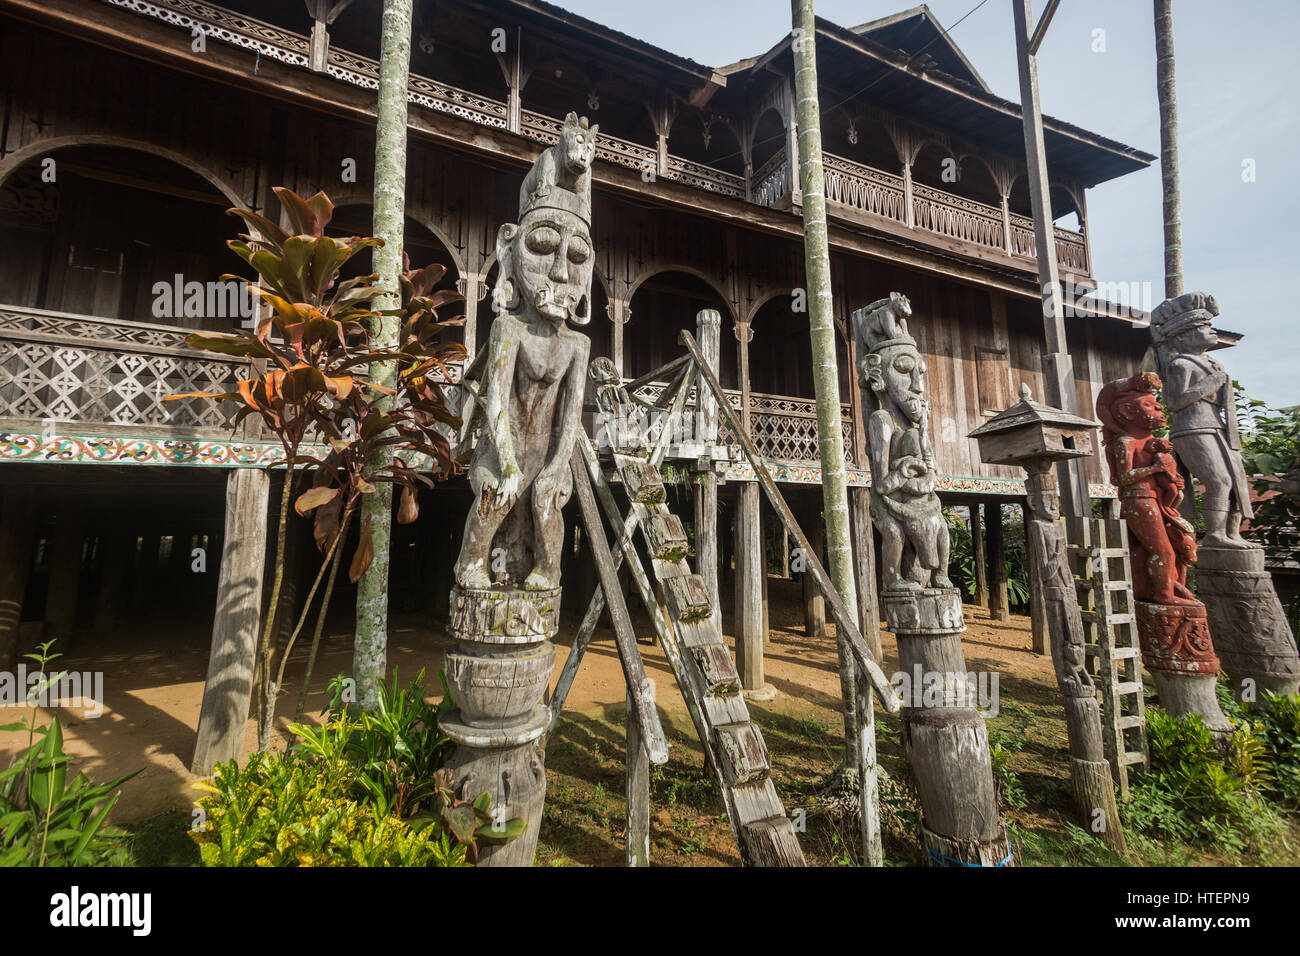 Patong ou effigies sculptés en bois debout à côté d'une maison longue ou Lamine bois sculpté avec entrée procédure créée à partir d'une seule pièce d'Ironwood de Bornéo (Kayu Banque D'Images